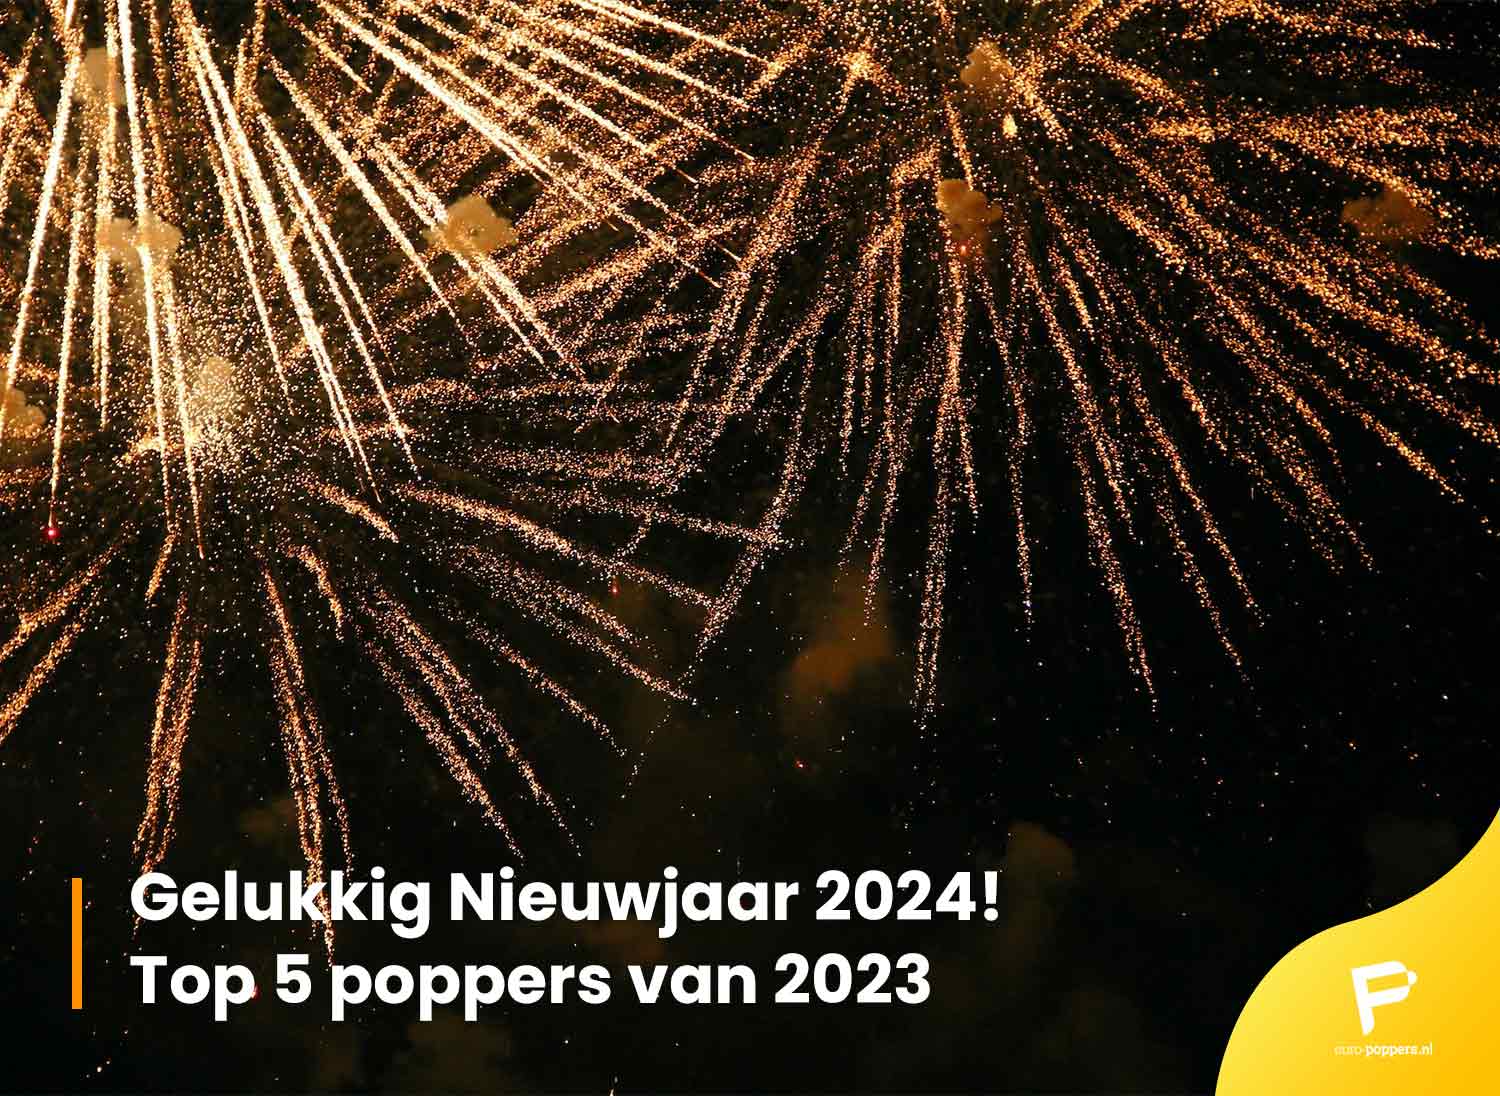 Je bekijkt nu Gelukkig Nieuwjaar 2024! Top 5 poppers van 2023